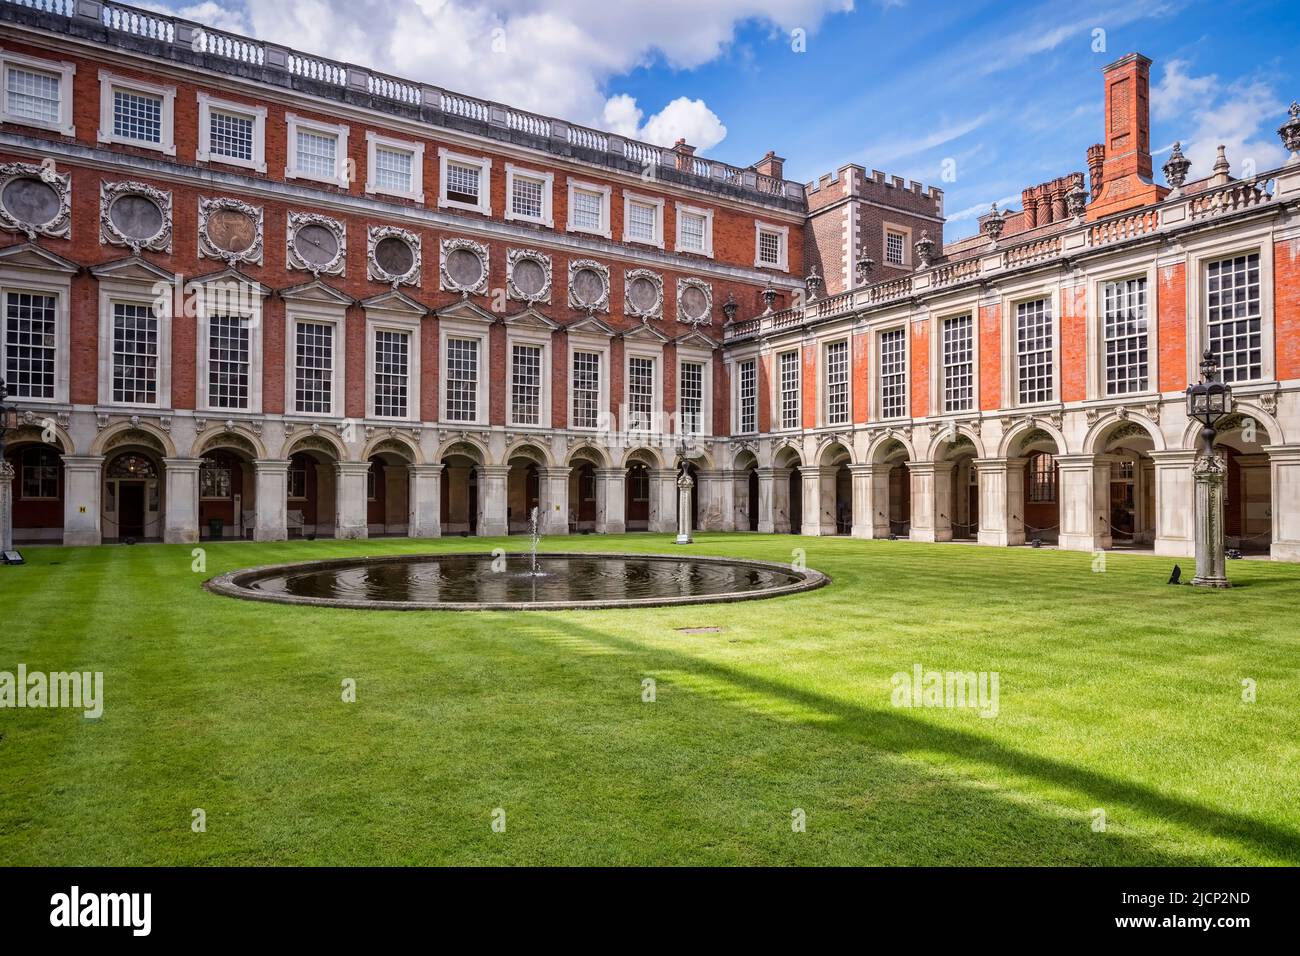 9 juin 2019 : Richmond upon Thames, Londres, Royaume-Uni - The Fountain court in Hampton court Palace, l'ancienne résidence royale de Londres Ouest. Banque D'Images